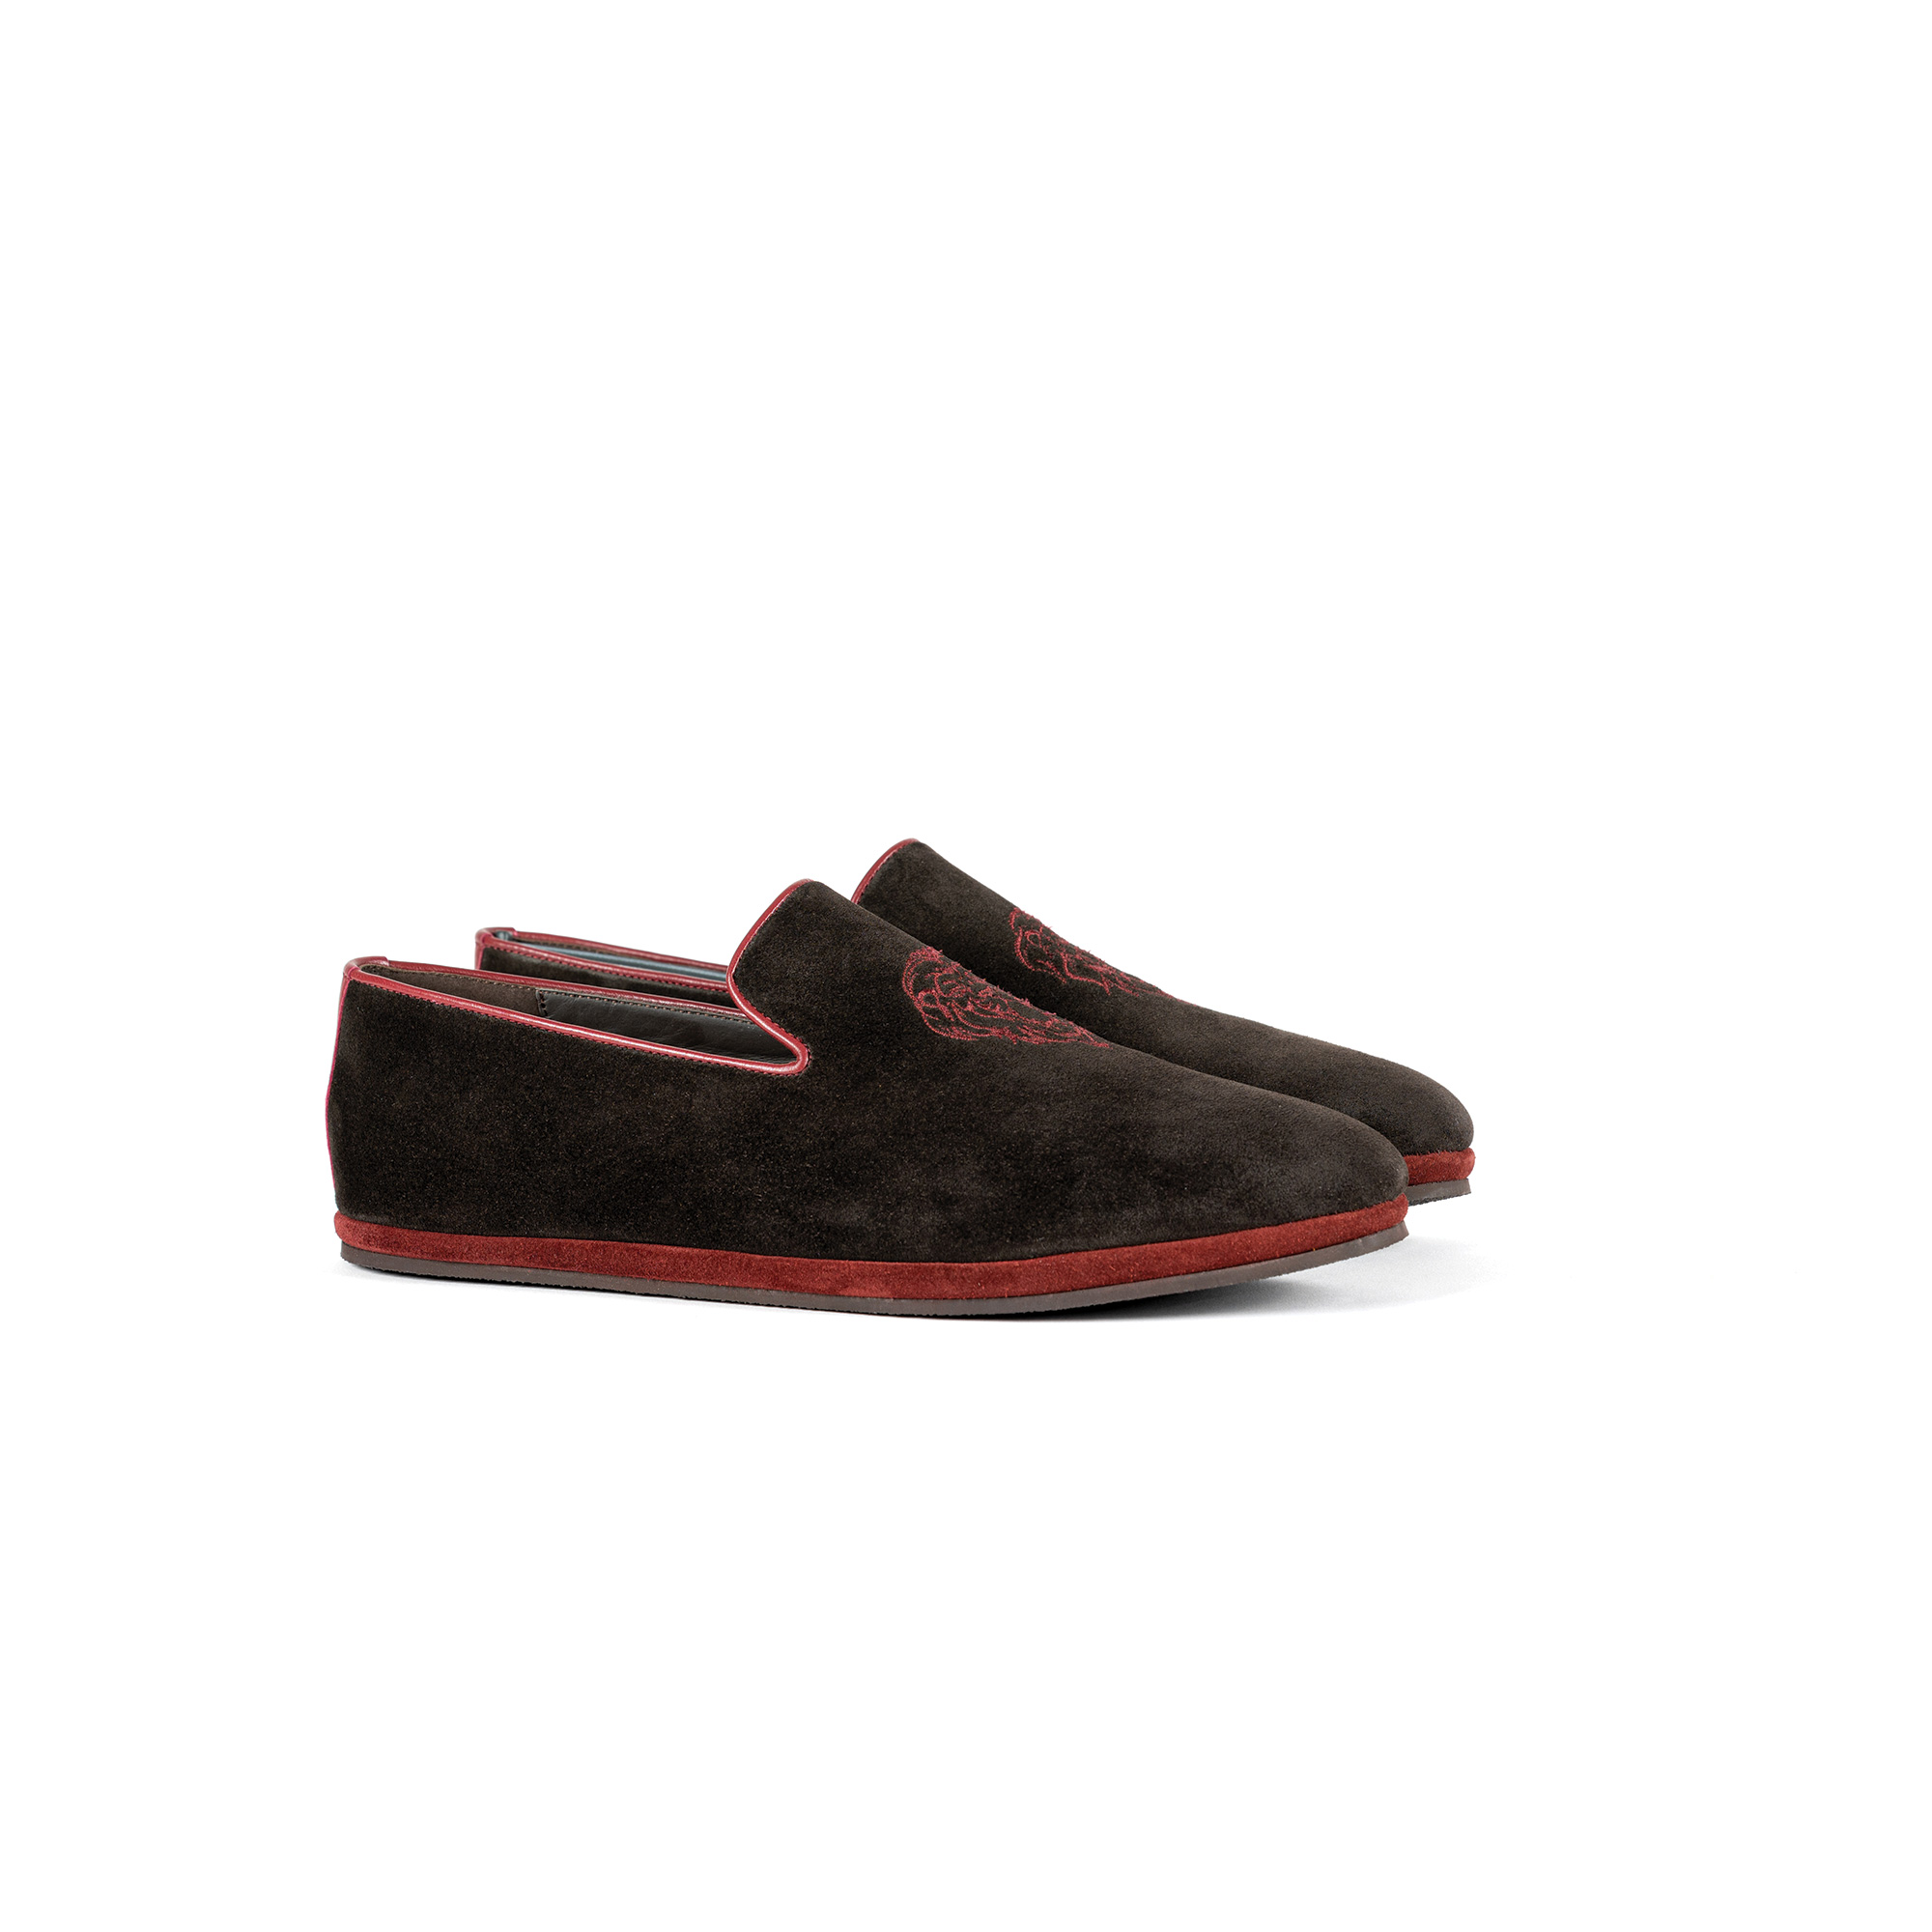 Pantofola interno classico chiusa in velour pepe - Farfalla italian slippers